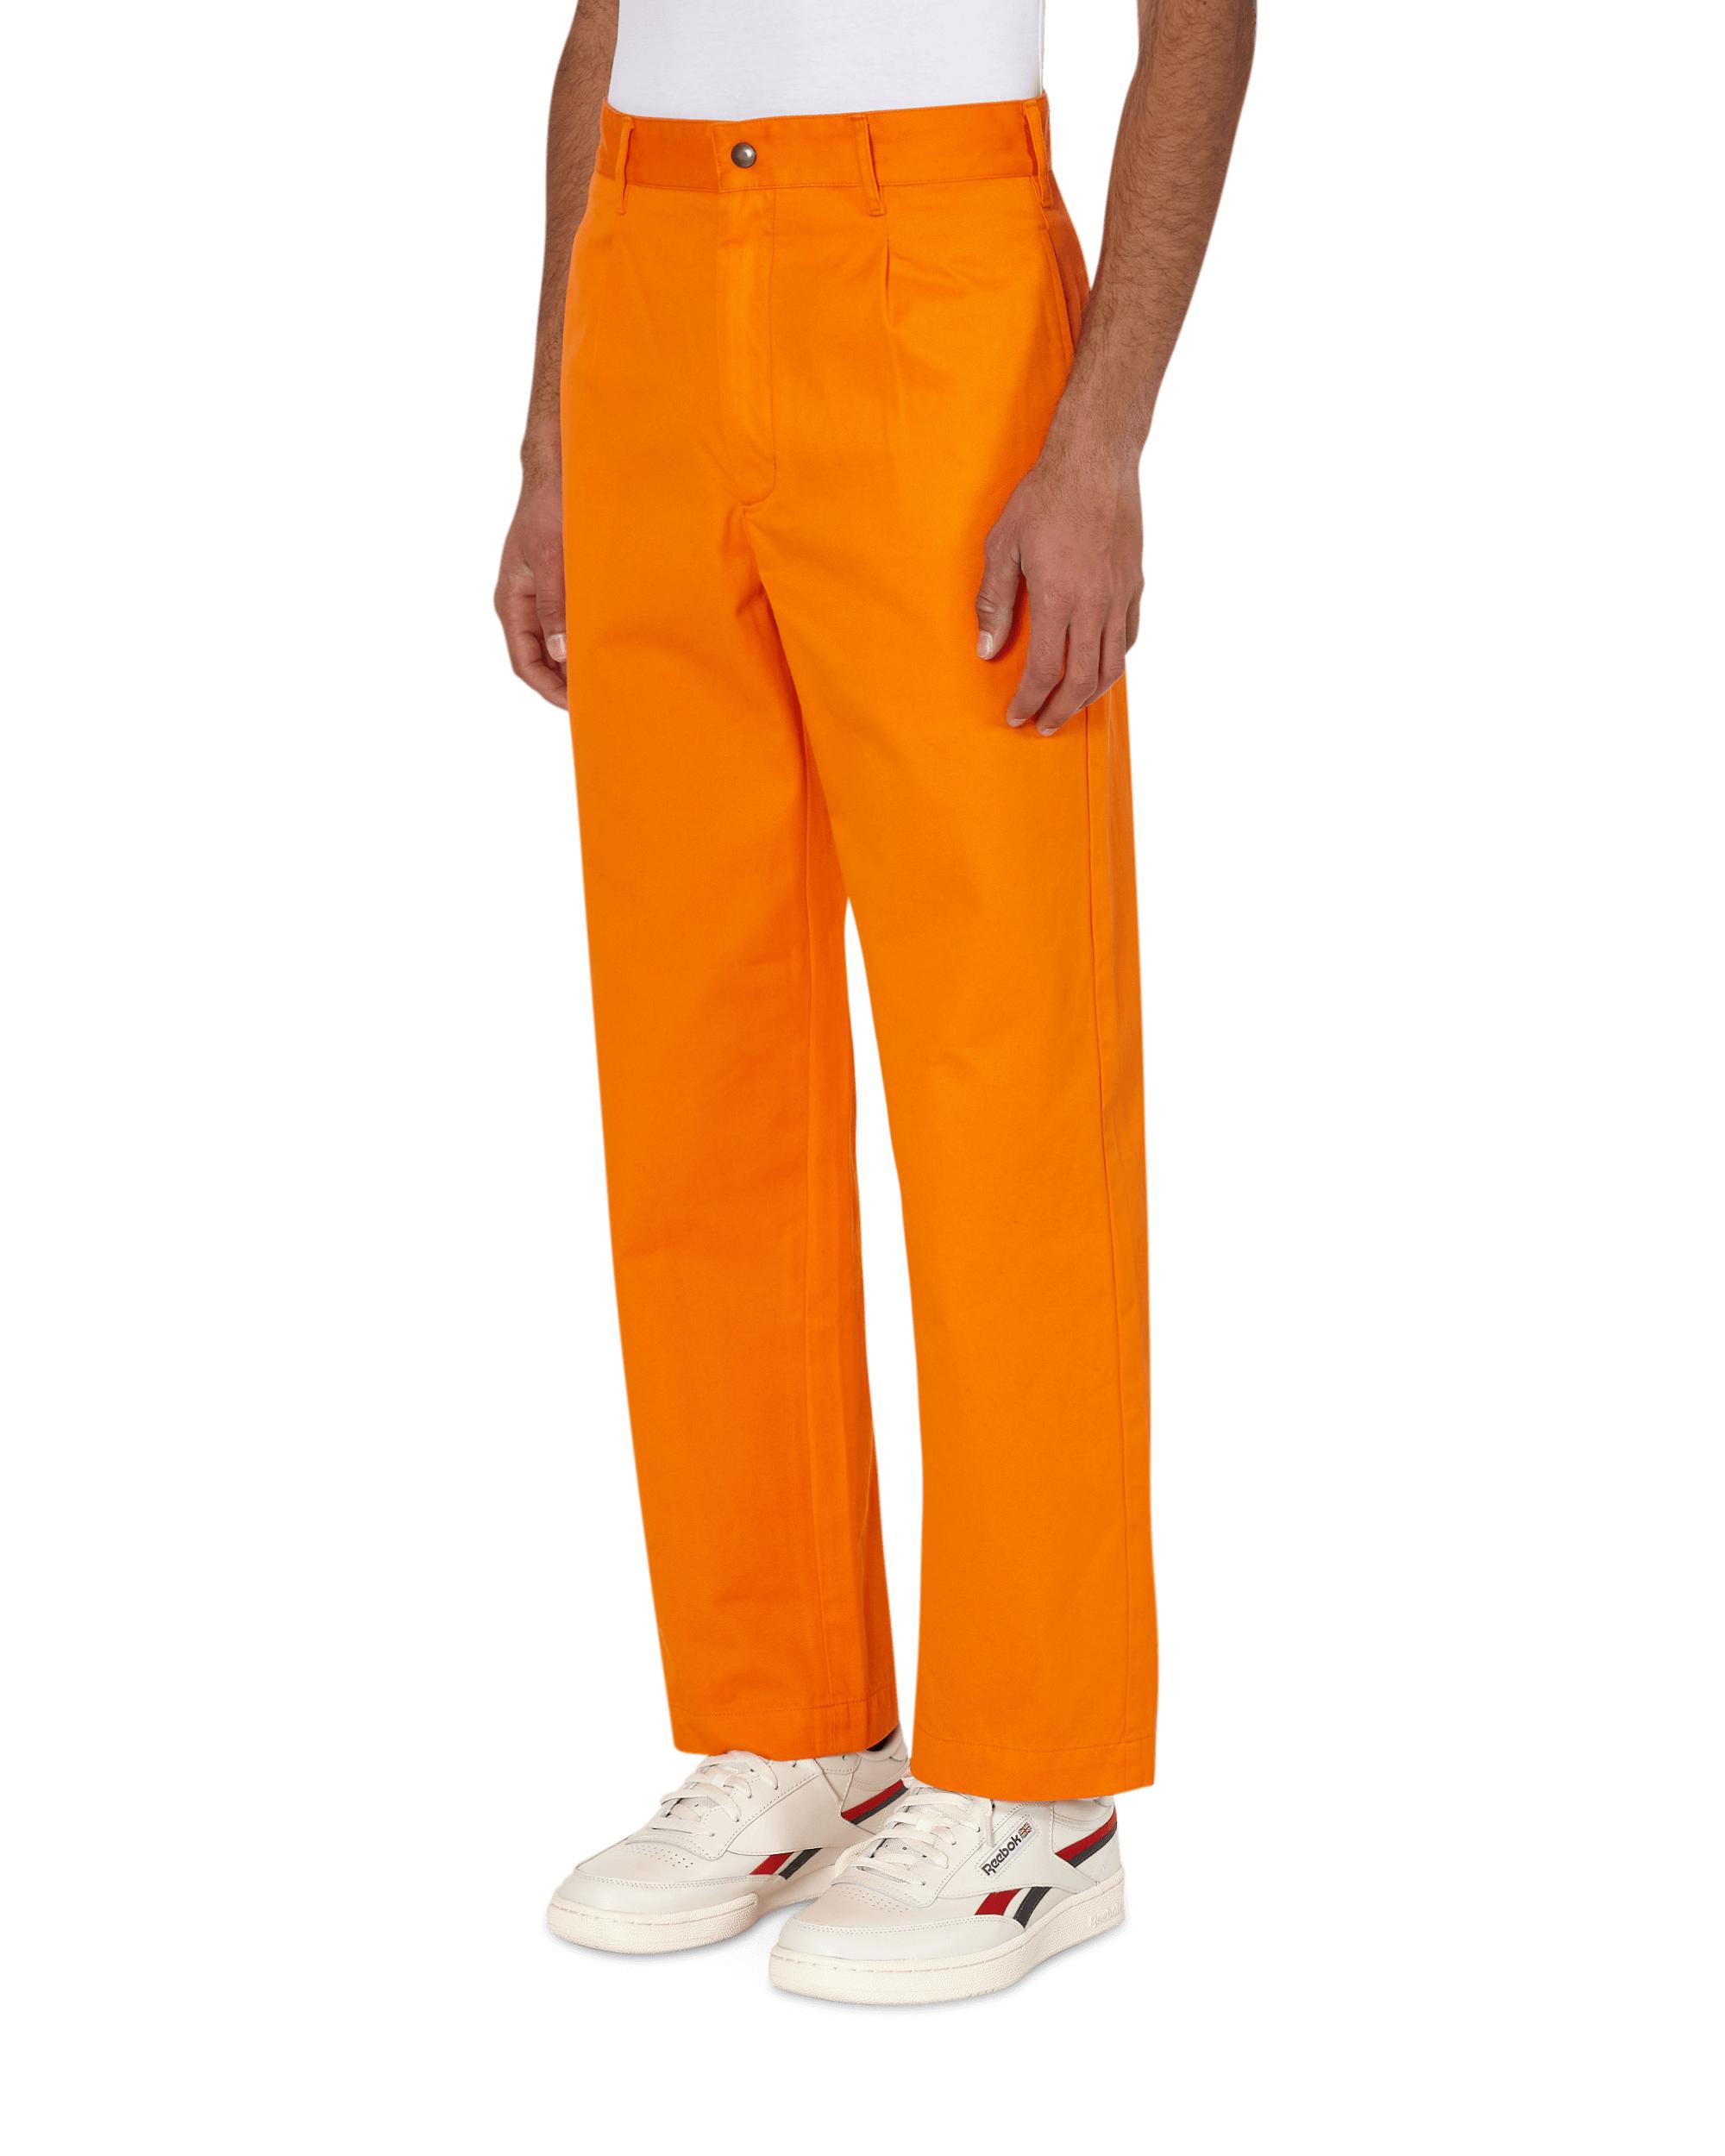 Noah Cotton Single-pleat Pants in Orange for Men - Lyst